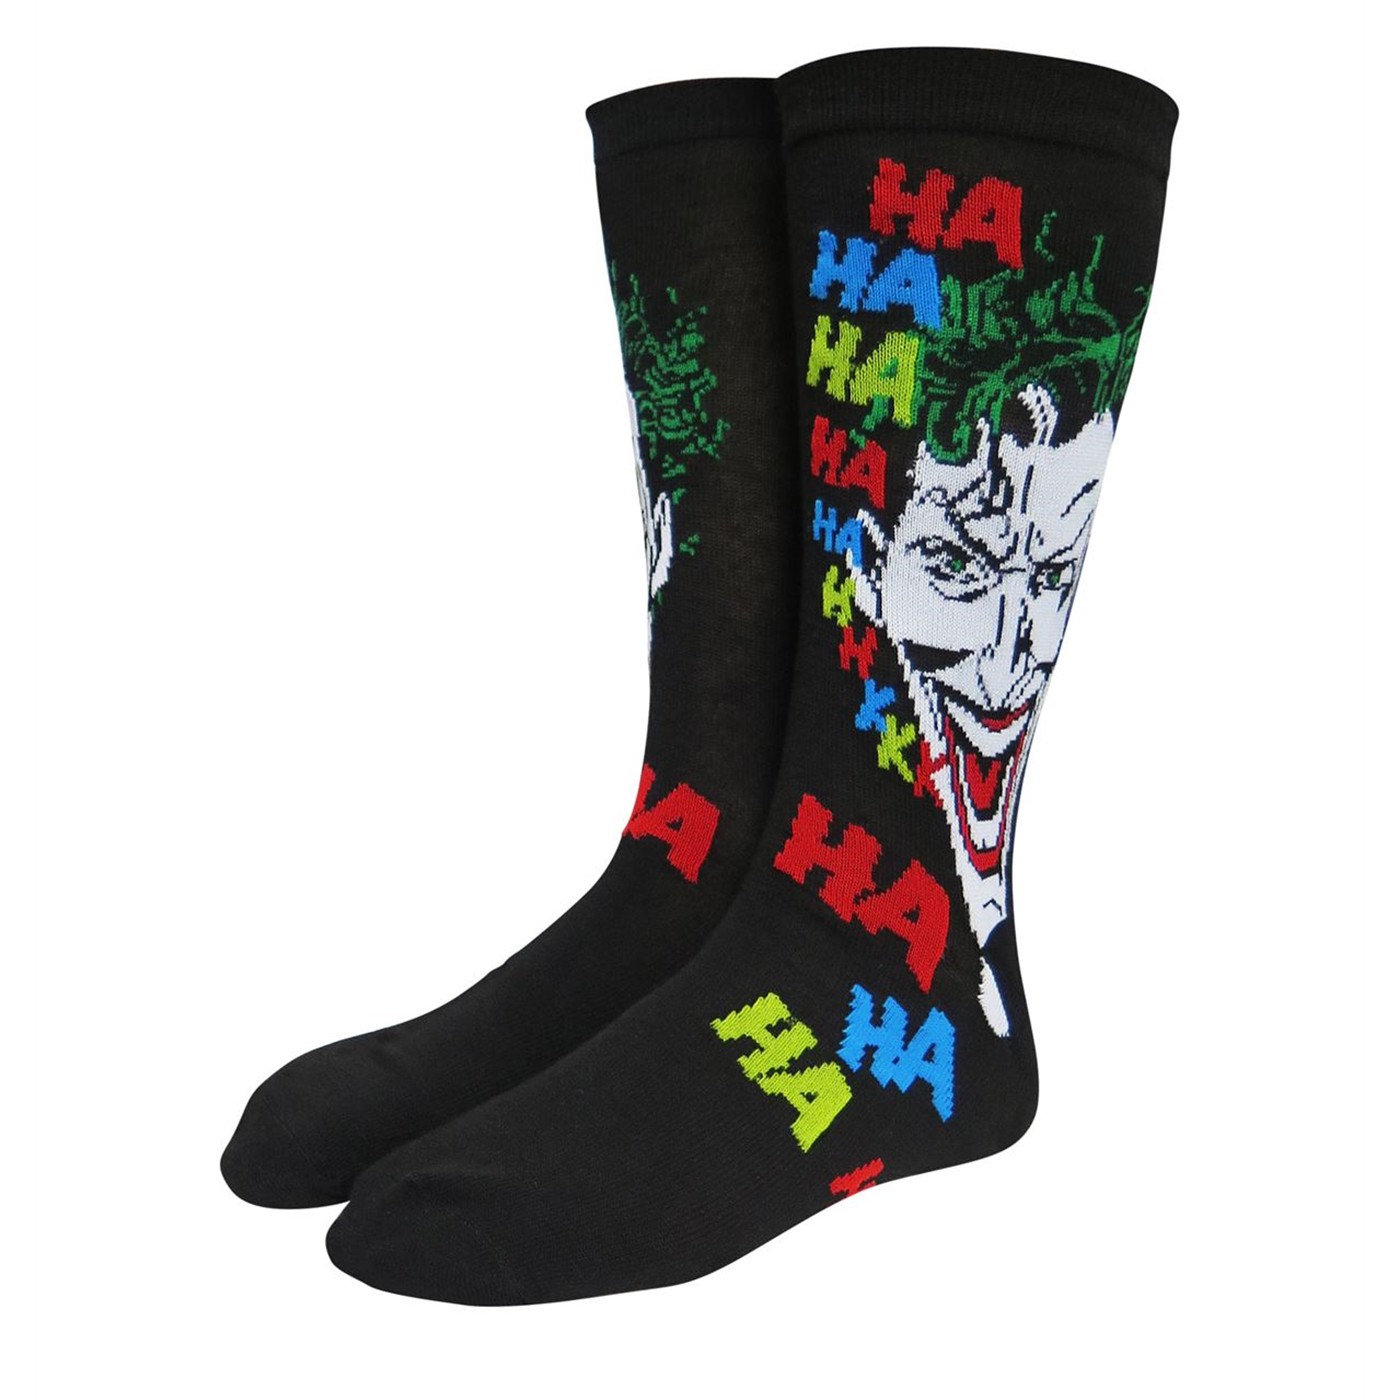 The Joker Clown Prince of Crime Crew Socks 2-Pack